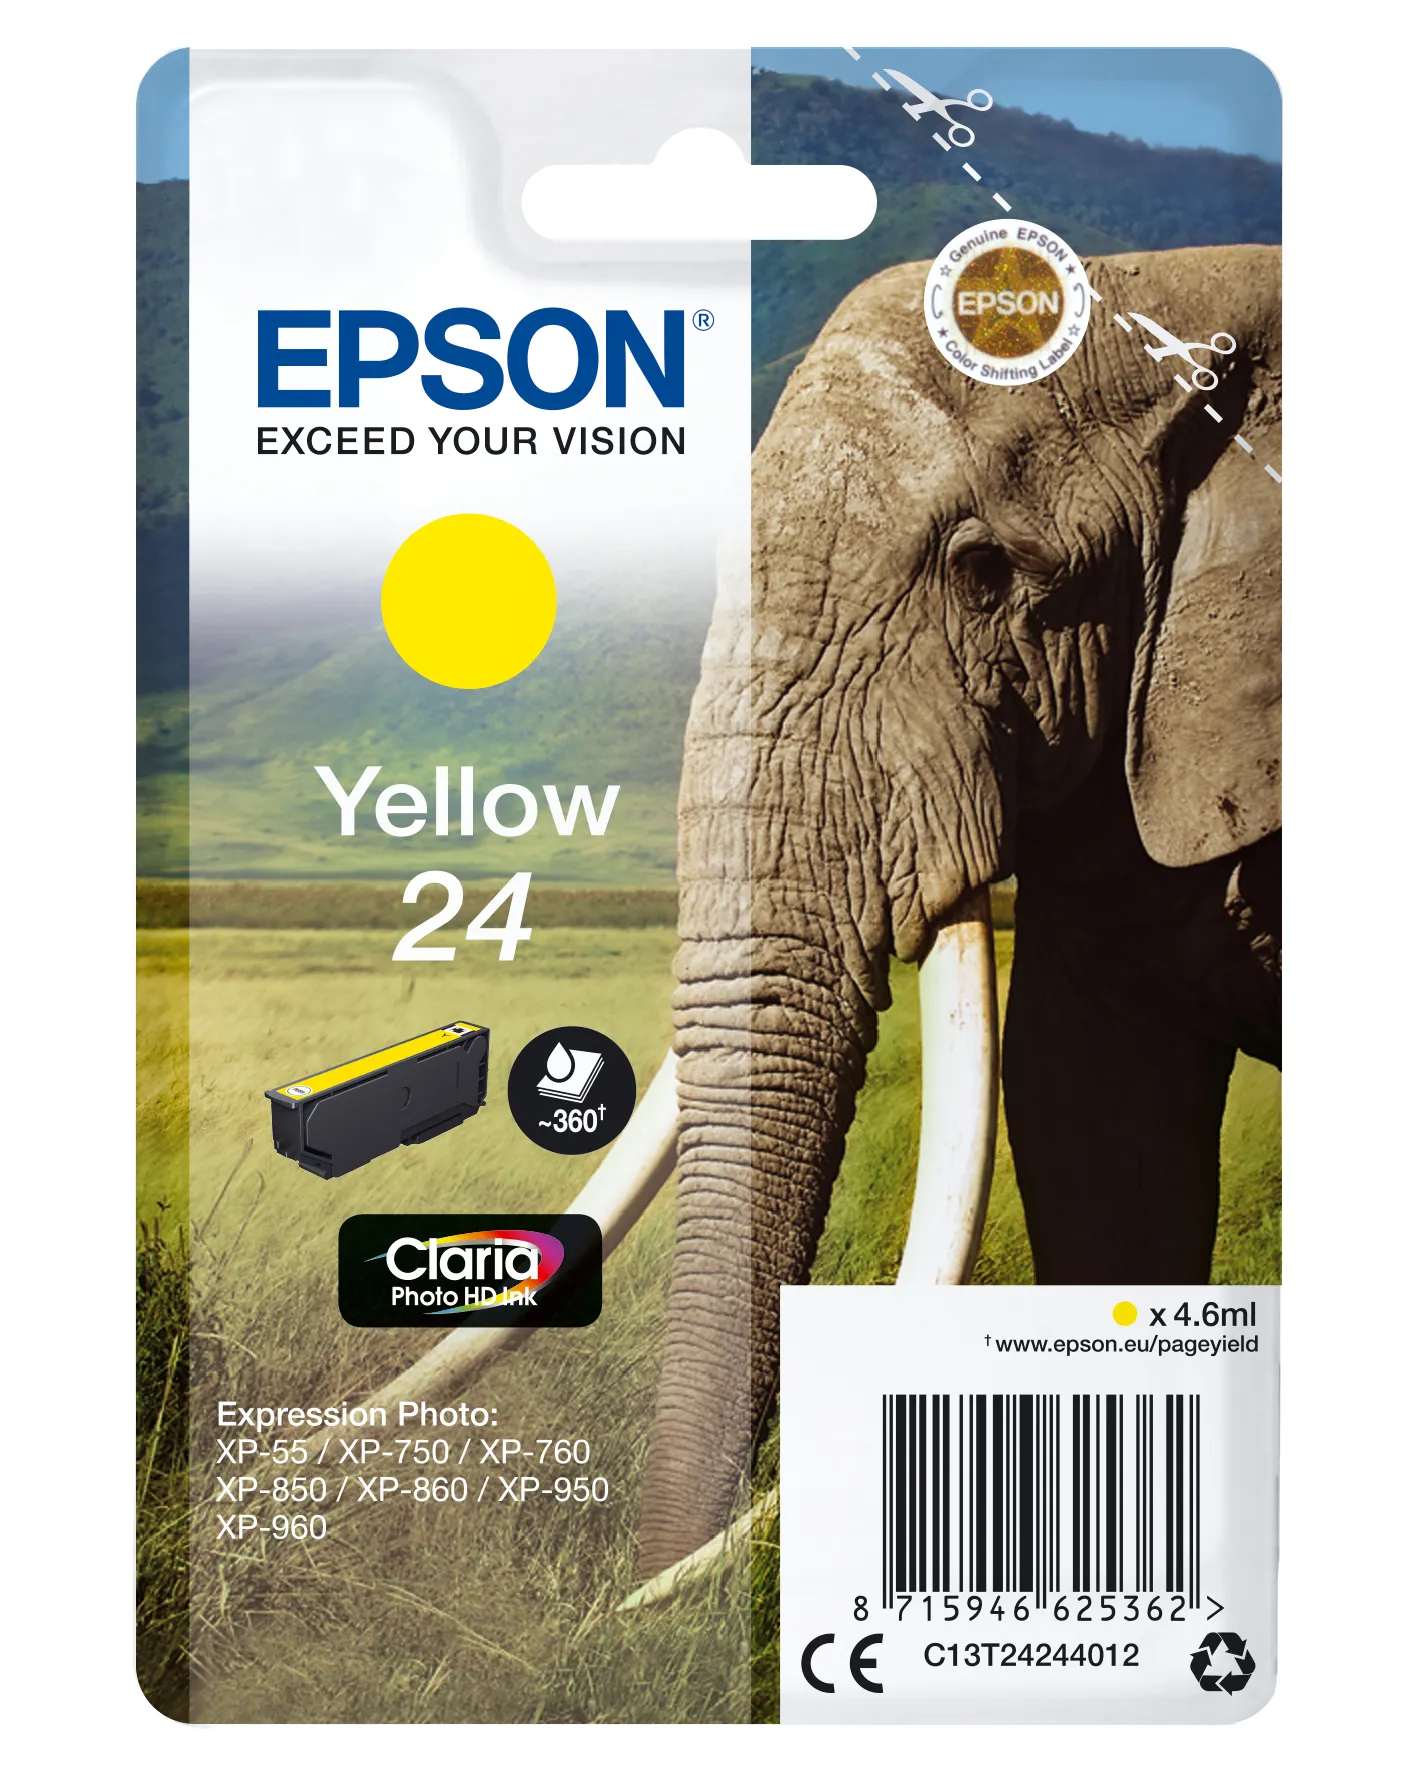 Achat EPSON 24 cartouche encre jaune capacité standard 4.6ml sur hello RSE - visuel 5